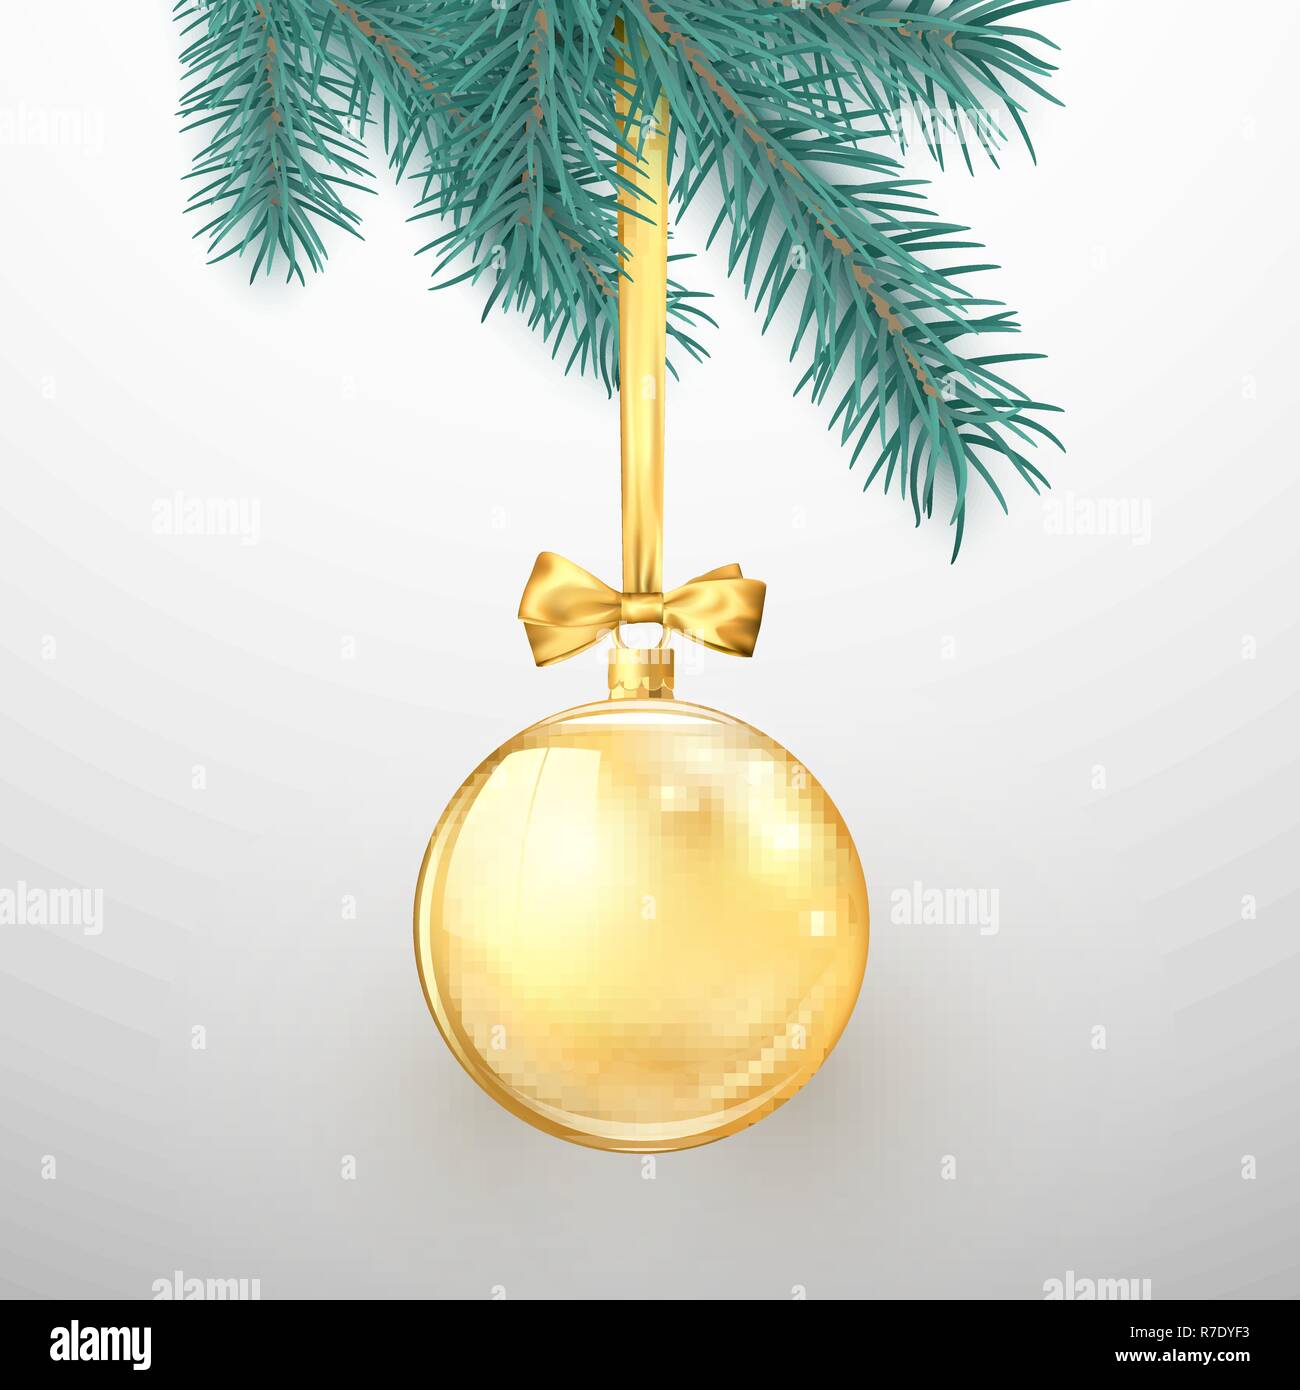 Buon Natale e Felice Anno Nuovo. Vacanze elementi di decorazione. Golden glitter palla di Natale con nastro color oro e bow appeso sul Nuovo Anno Albero. Vect Illustrazione Vettoriale